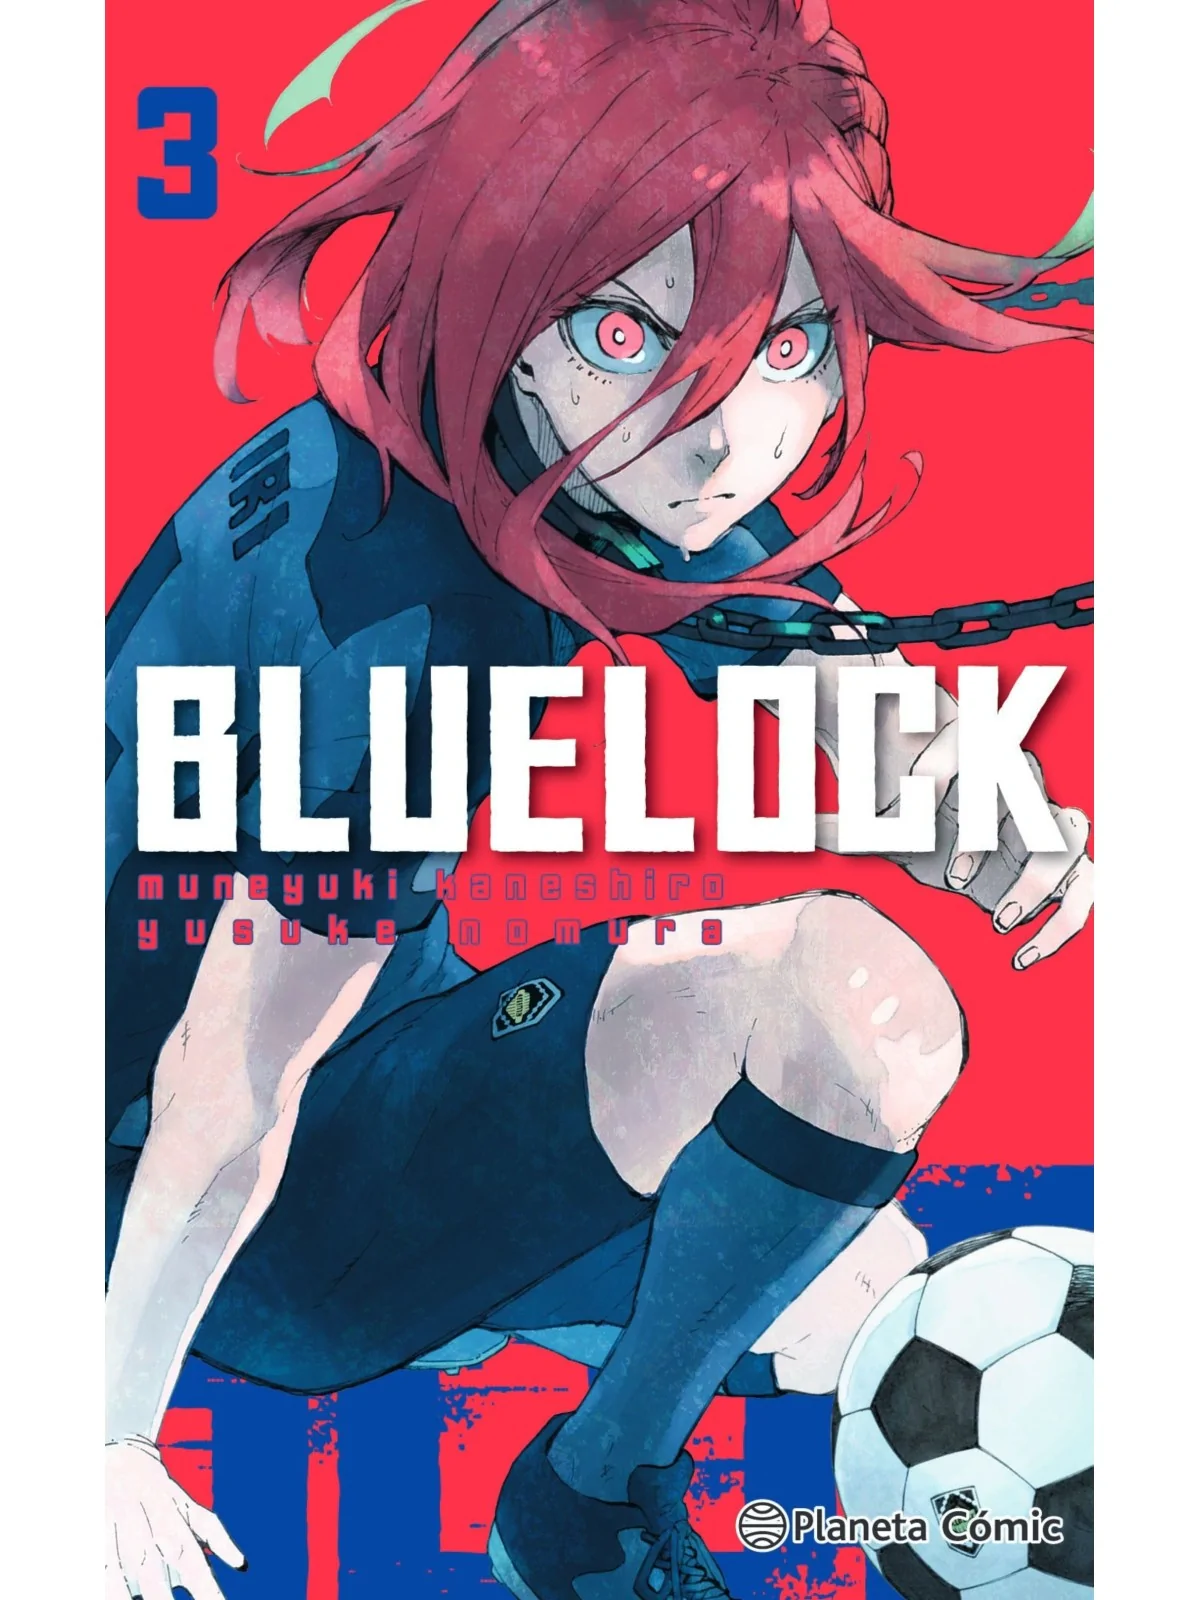 Comprar 3.blue Lock.(Manga shonen) barato al mejor precio 8,07 € de Pl